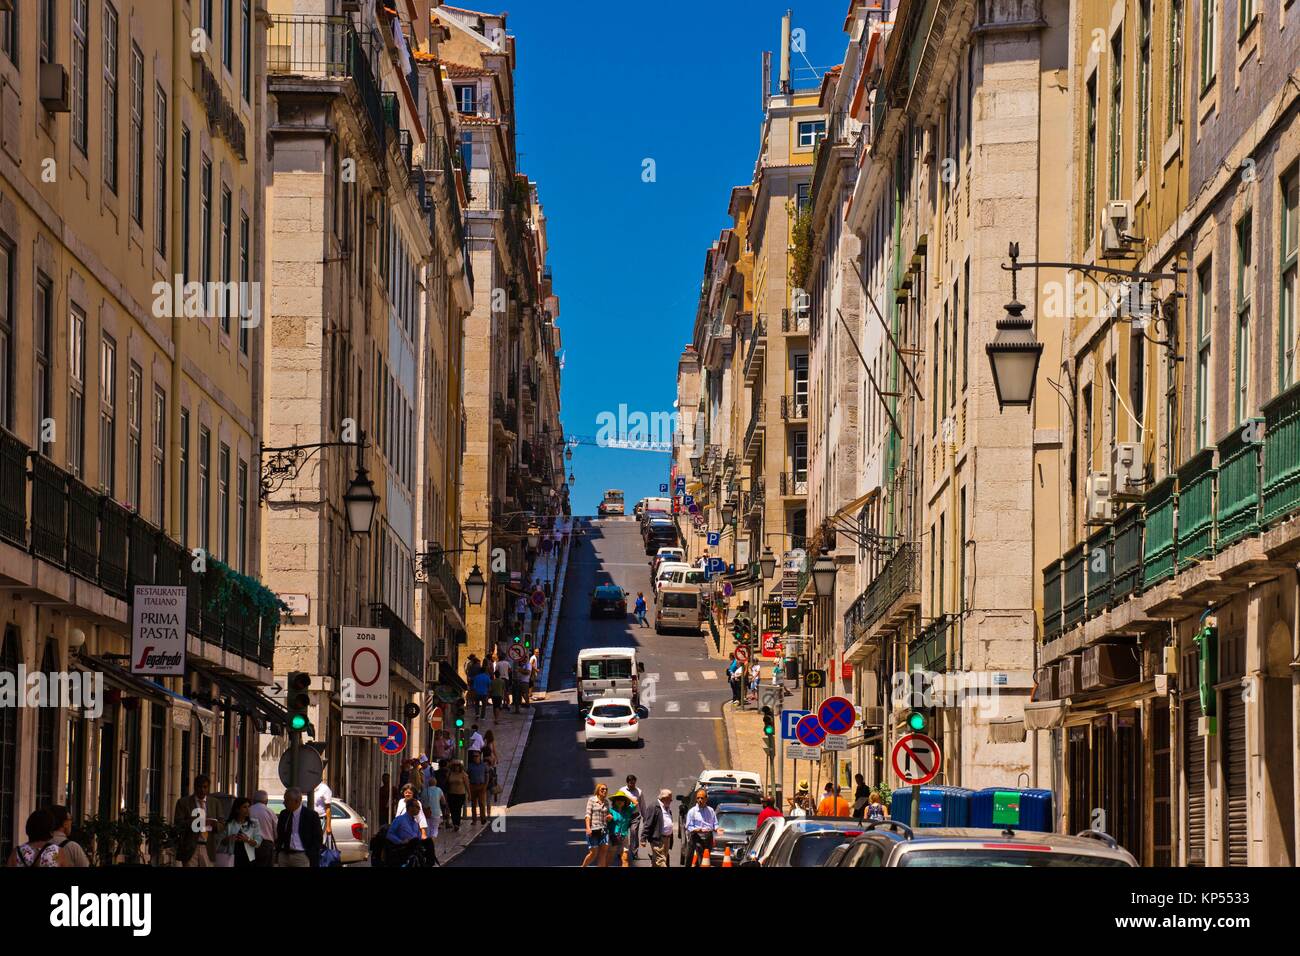 Rua da Madalena Street, Baixa Pombalina, Lisbon, Portugal, Europe. Stock Photo